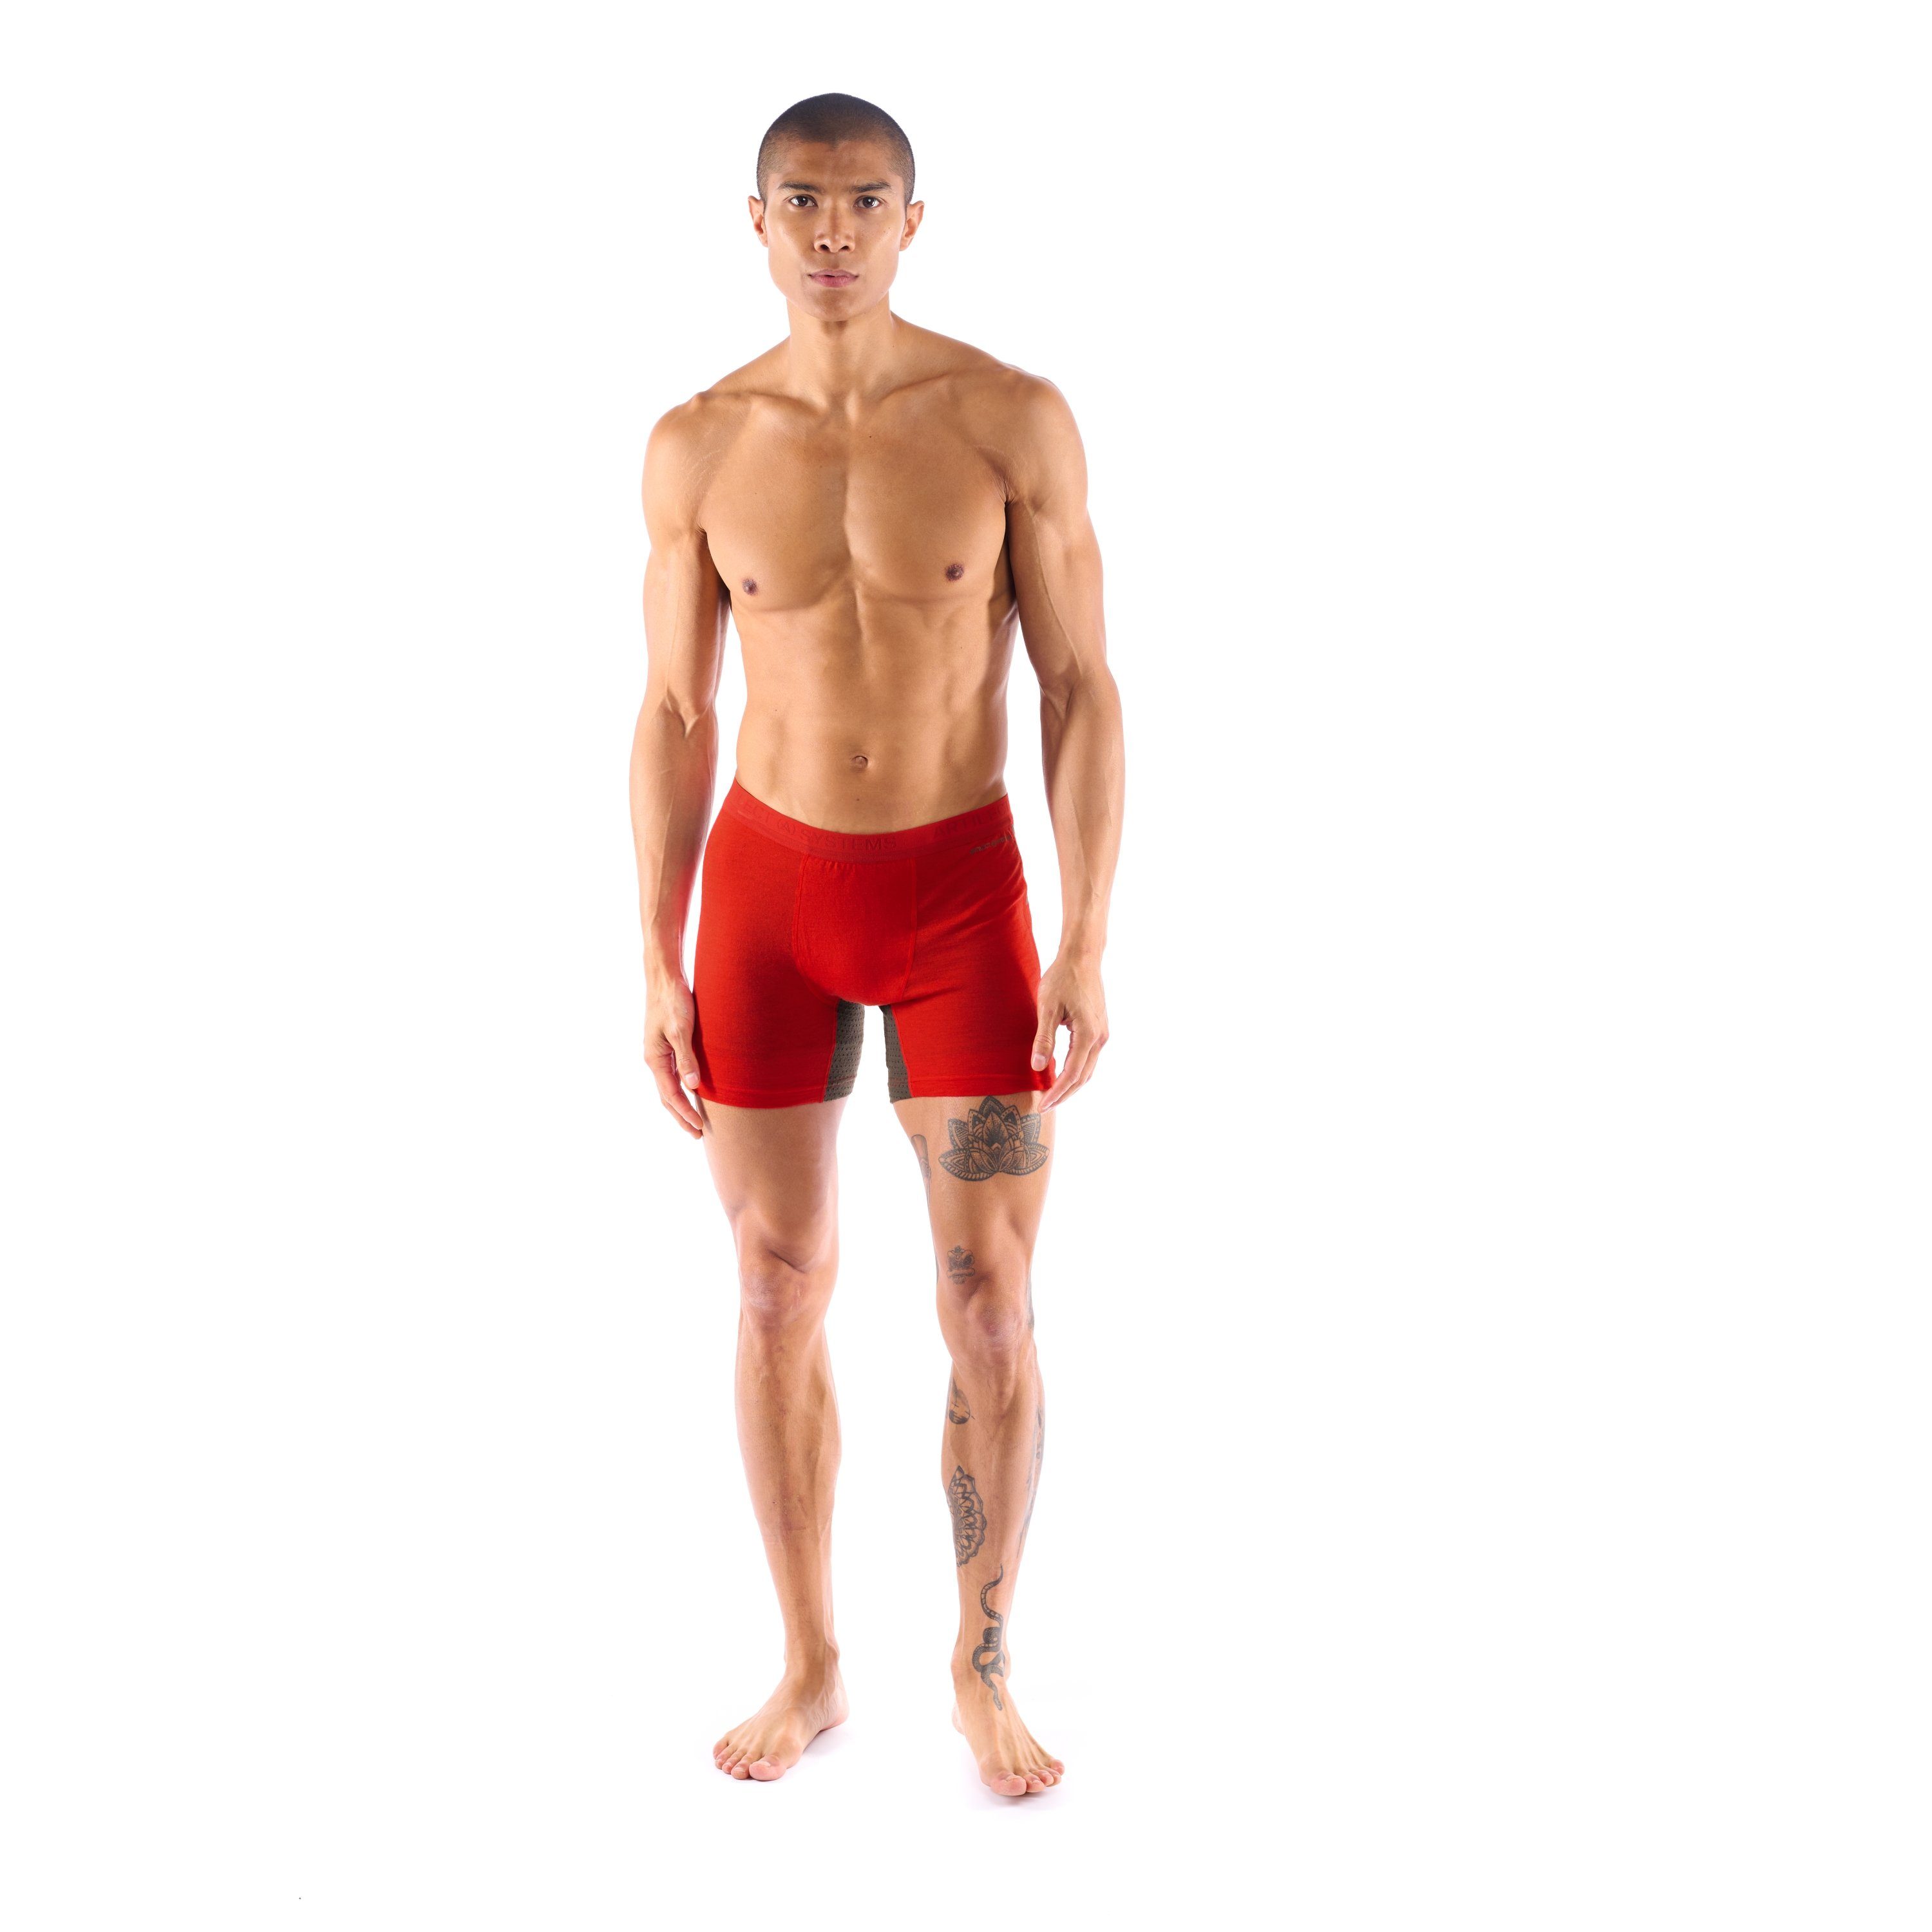 Artilect Boxer Artilect Herren Boulder Unterhose Red/Ash Brief 125 Super Boxer